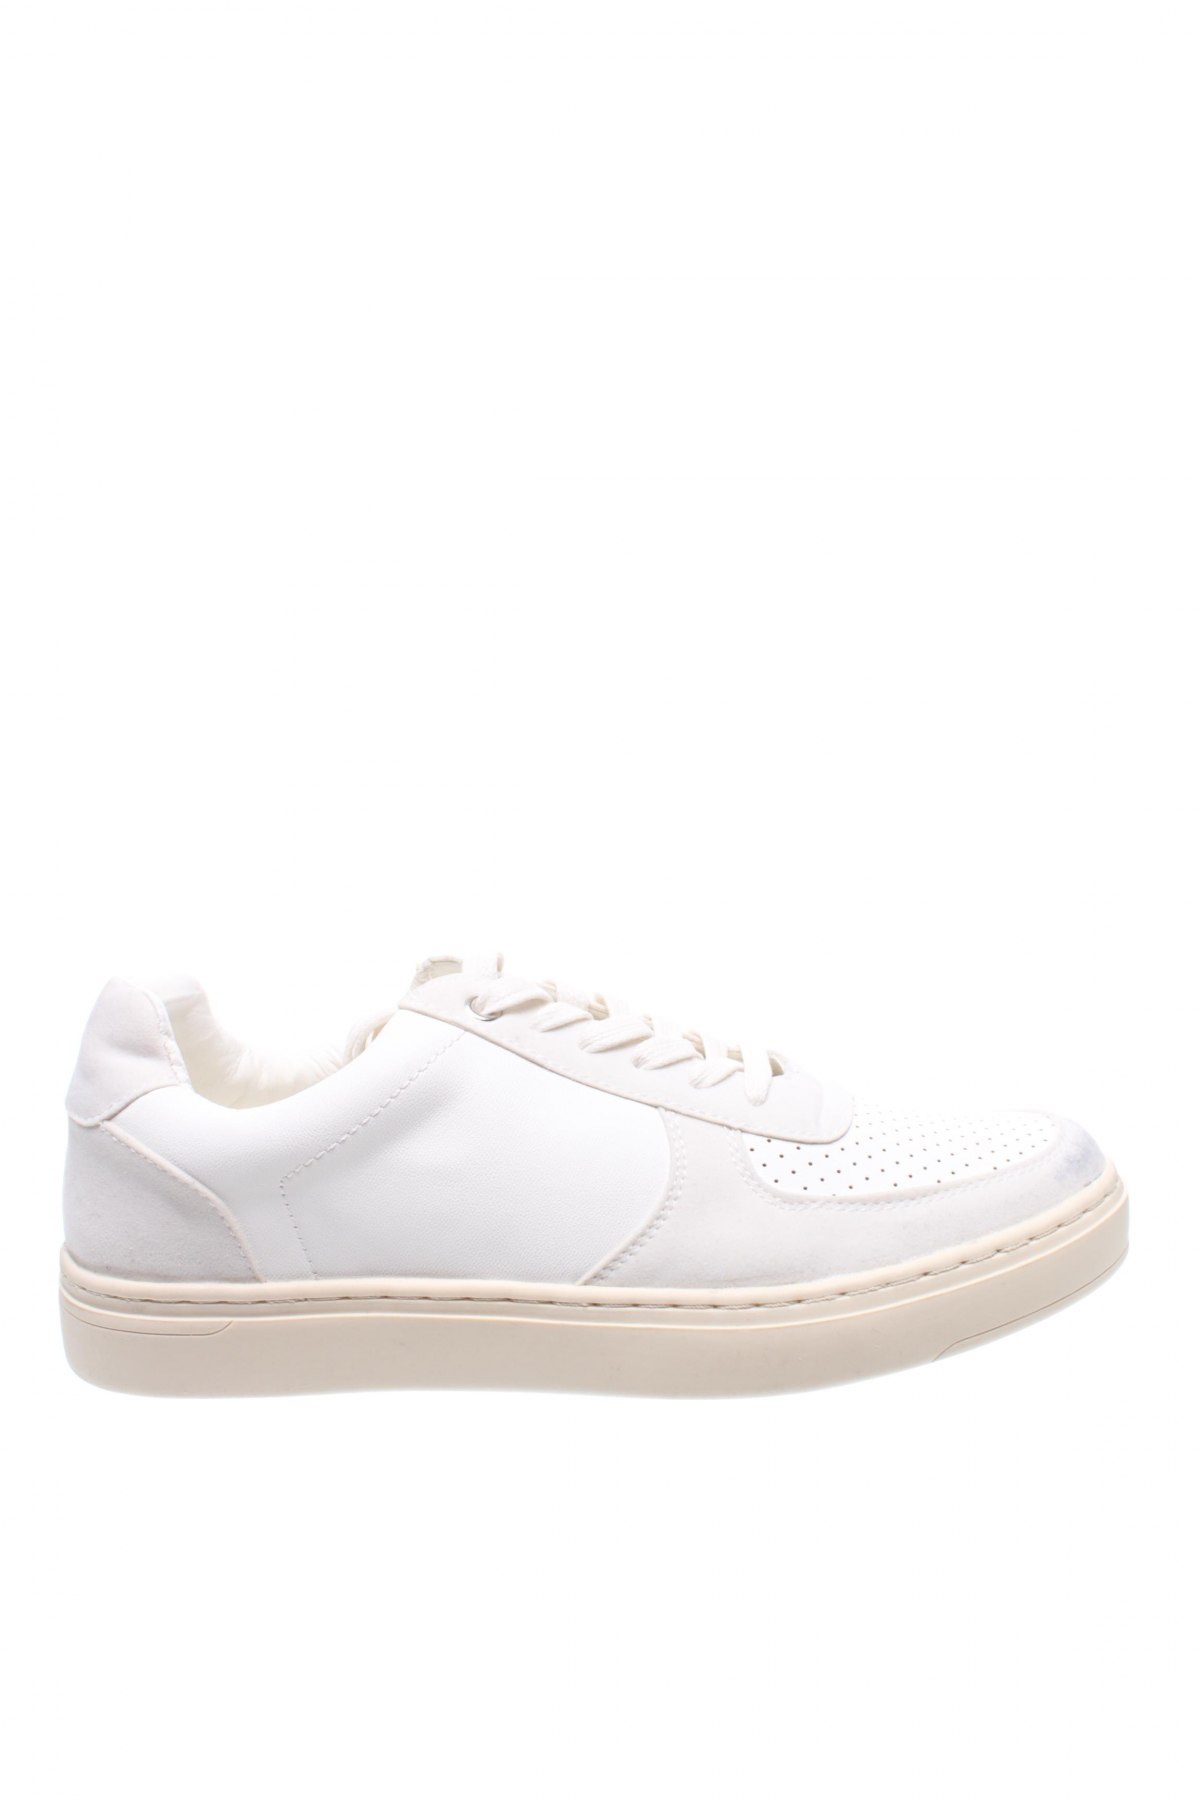 Damenschuhe Schuh, Größe 41, Farbe Weiß, Kunstleder, Textil, Preis 30,23 €